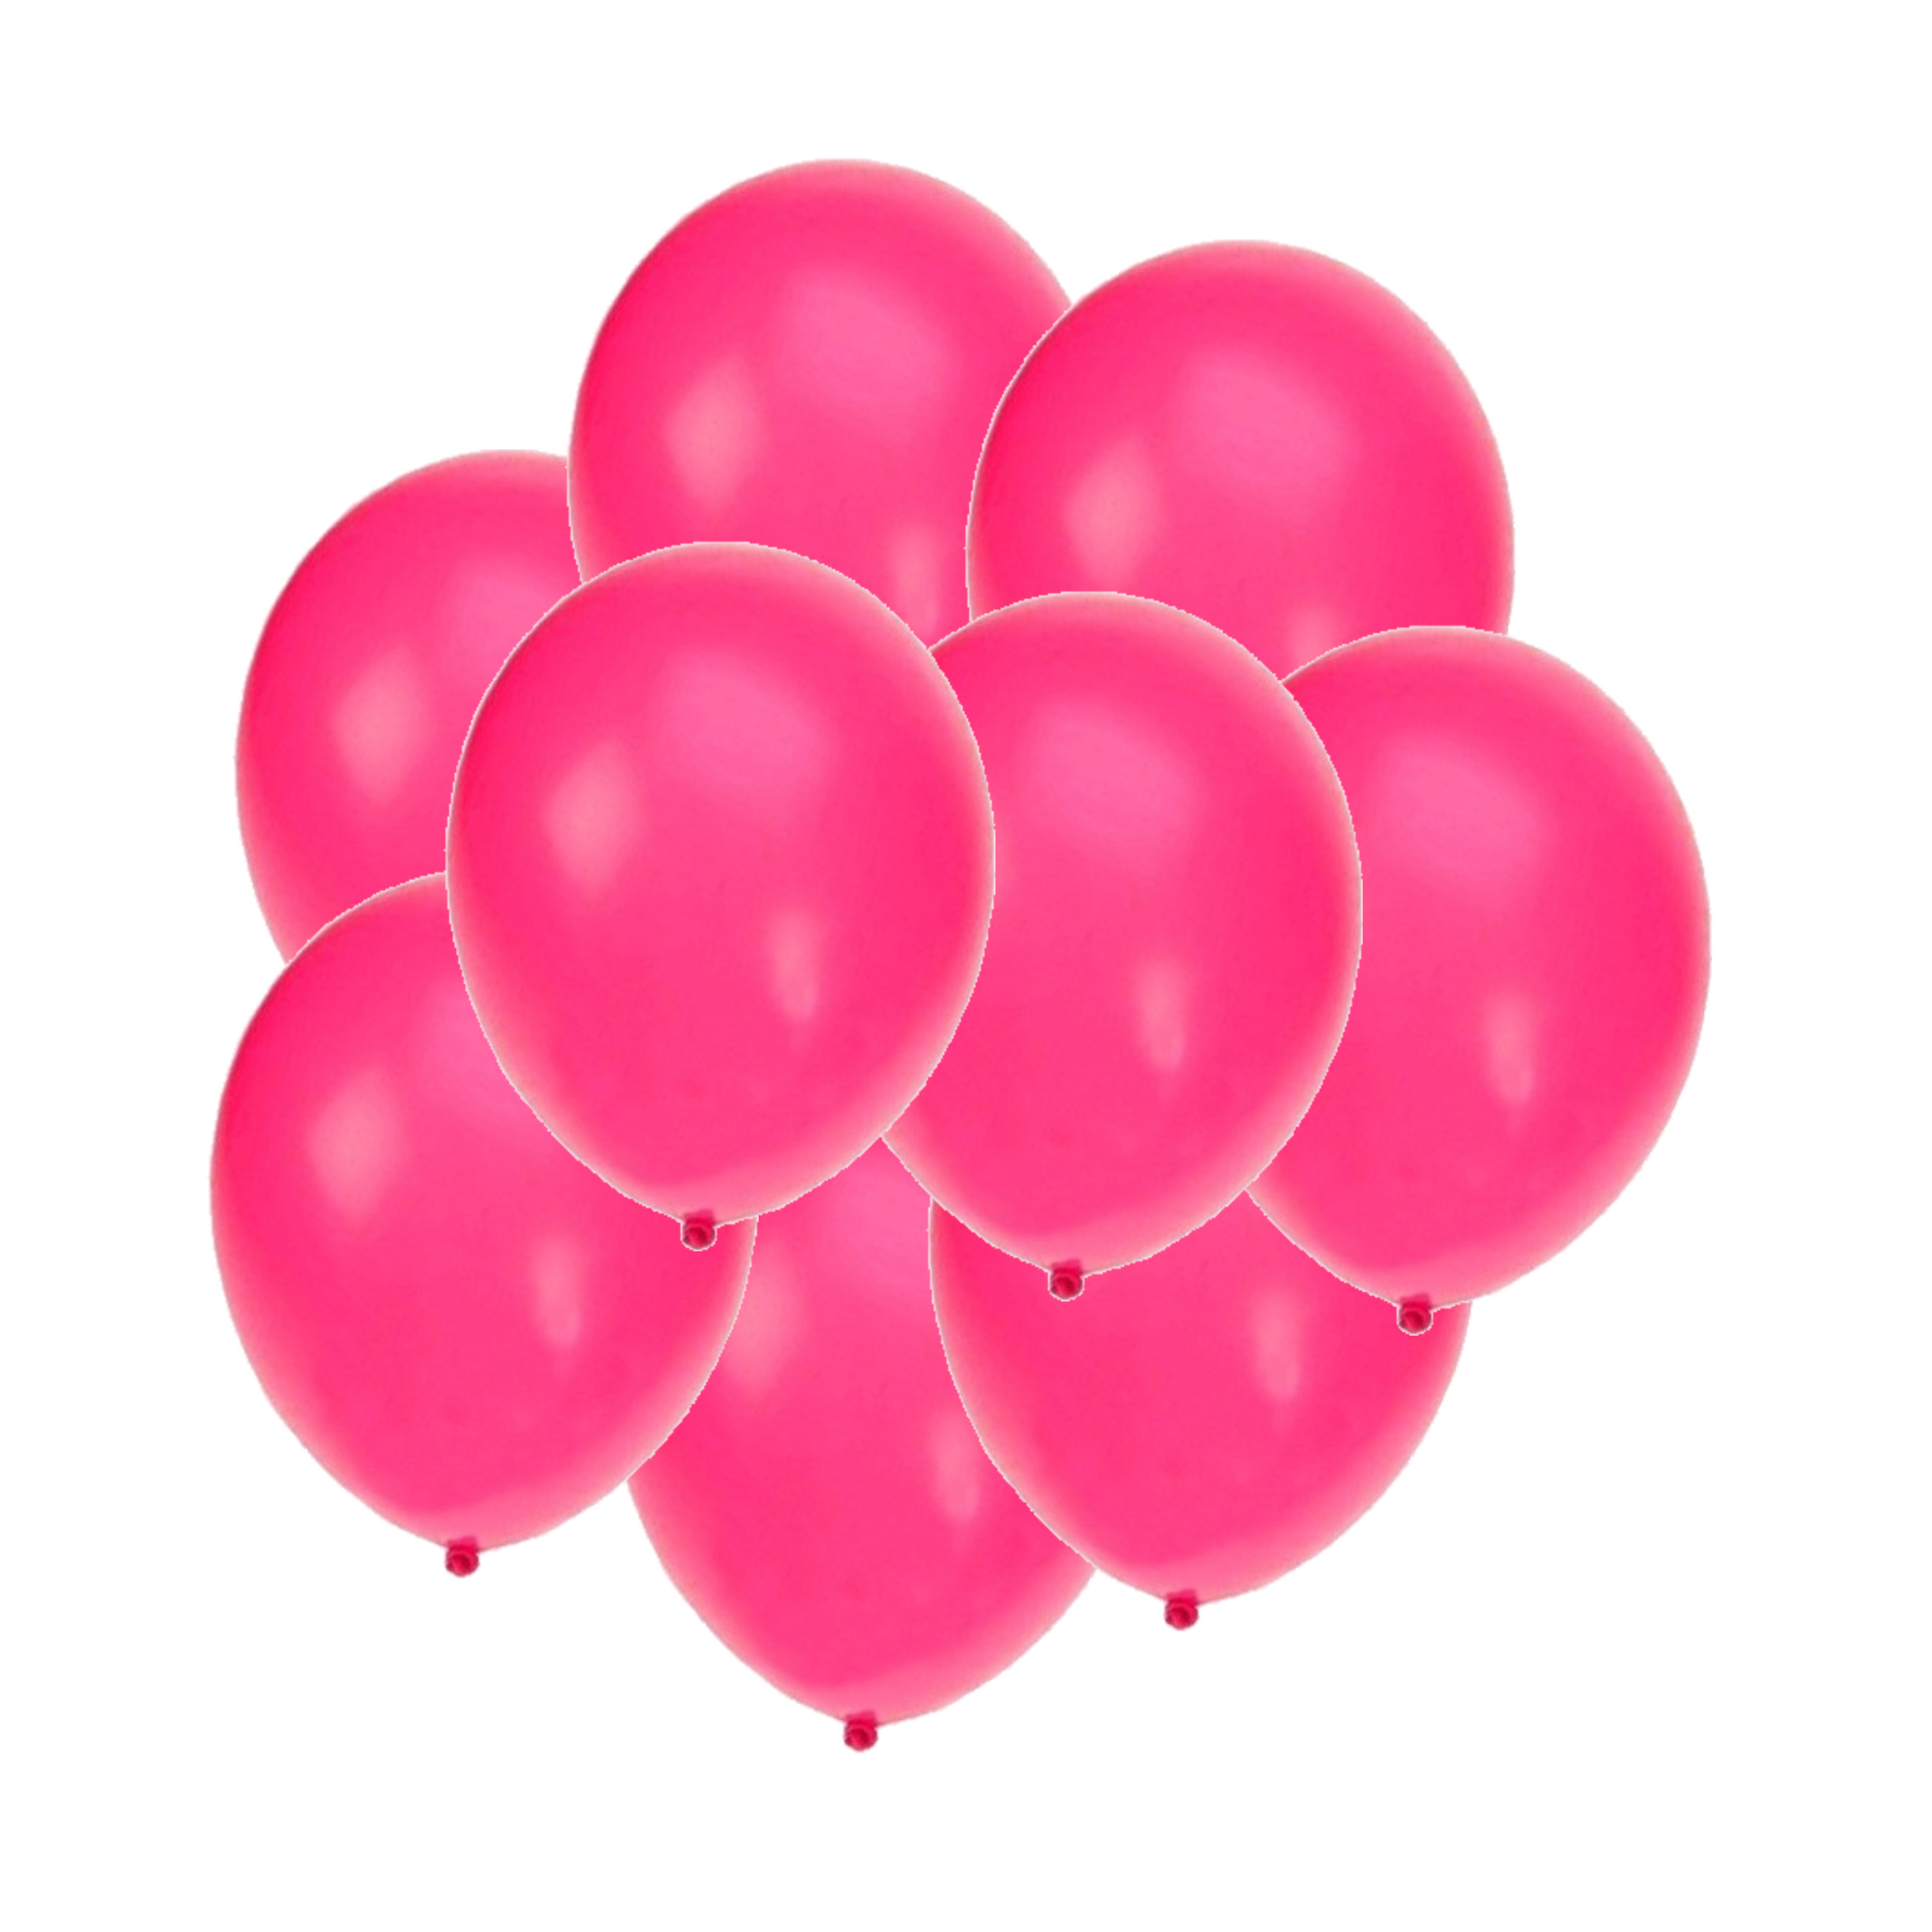 Bellatio decorations - Ballonnen knalroze/felroze 100x stuks rond 27 cm Top Merken Winkel